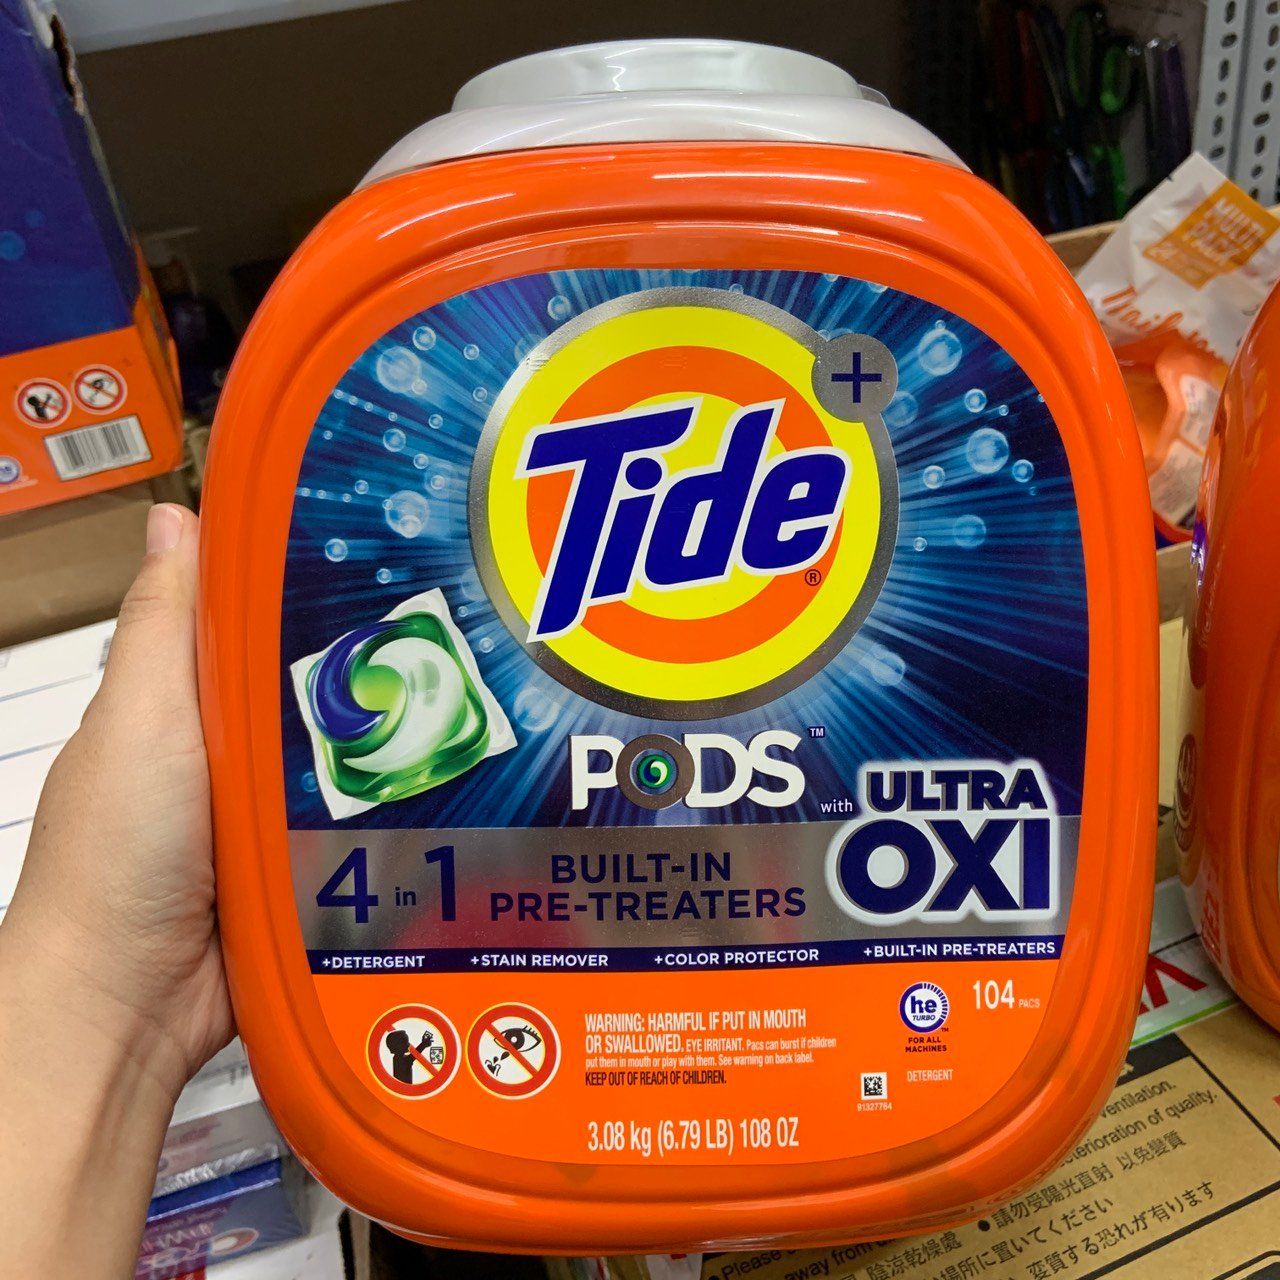 Viên giặt xả Tide Pods 4 in 1 thùng nhựa 104 viên